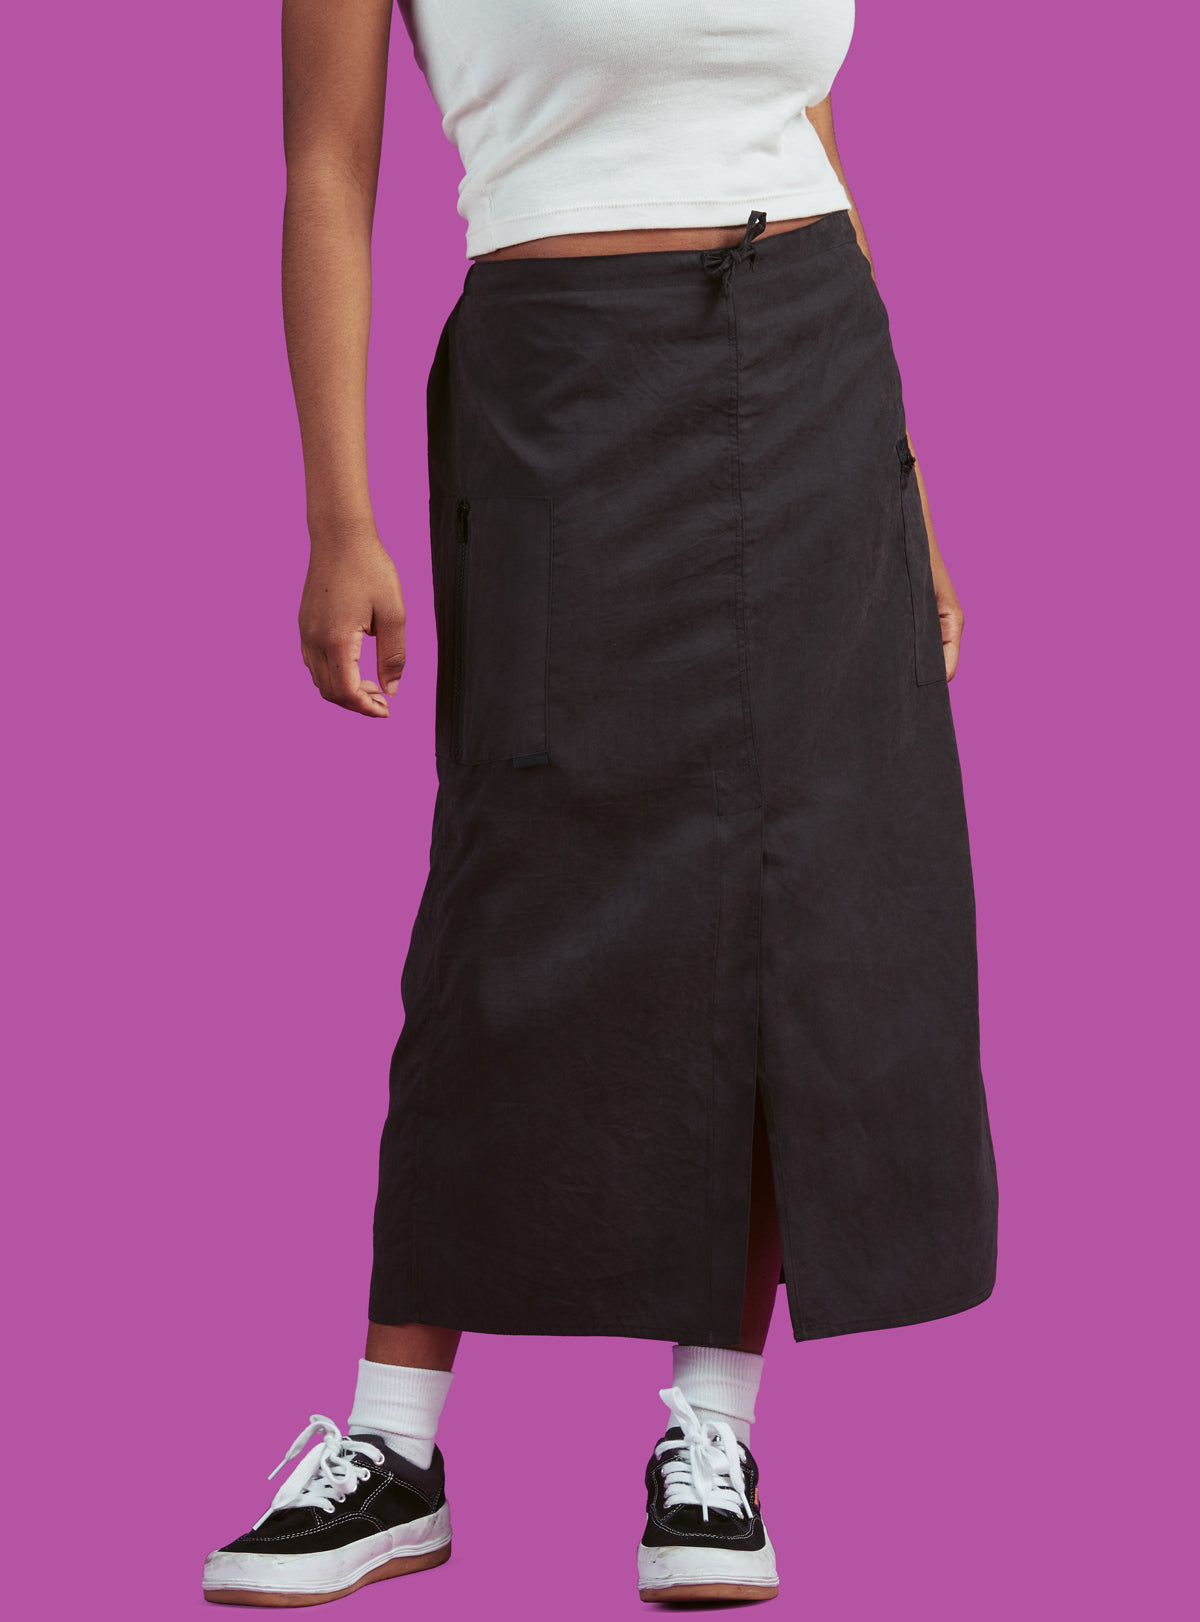 Notion Skirt